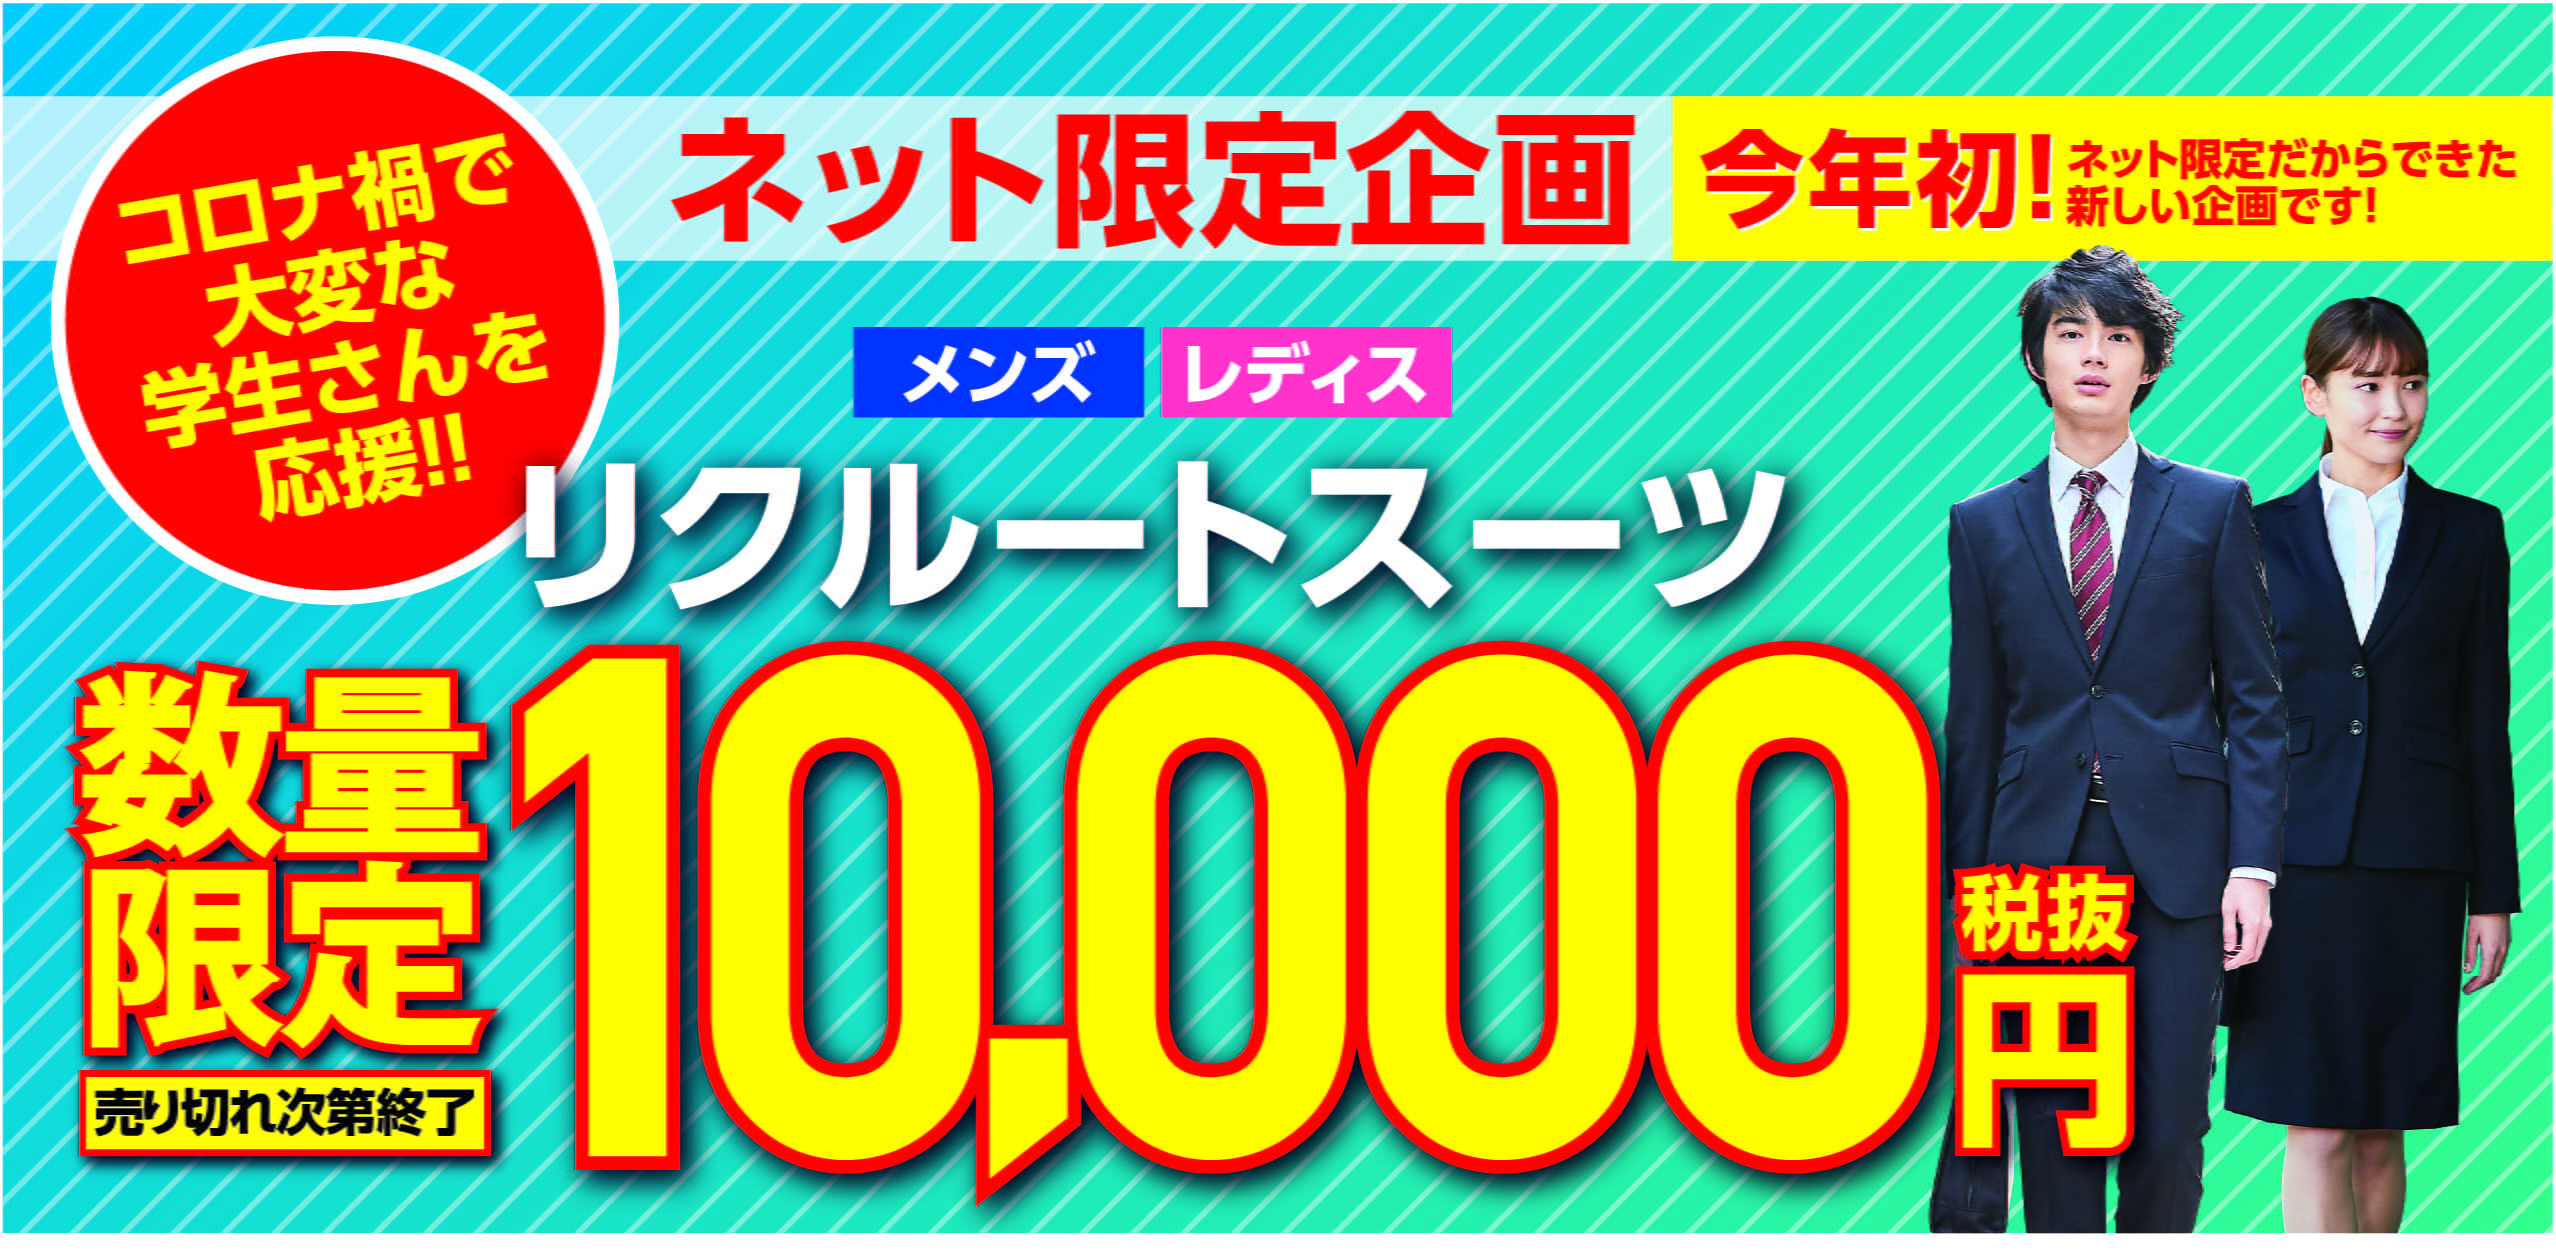 ネット限定企画 今年初! メンズ レディス リクルートスーツ 数量限定 10,000円税抜